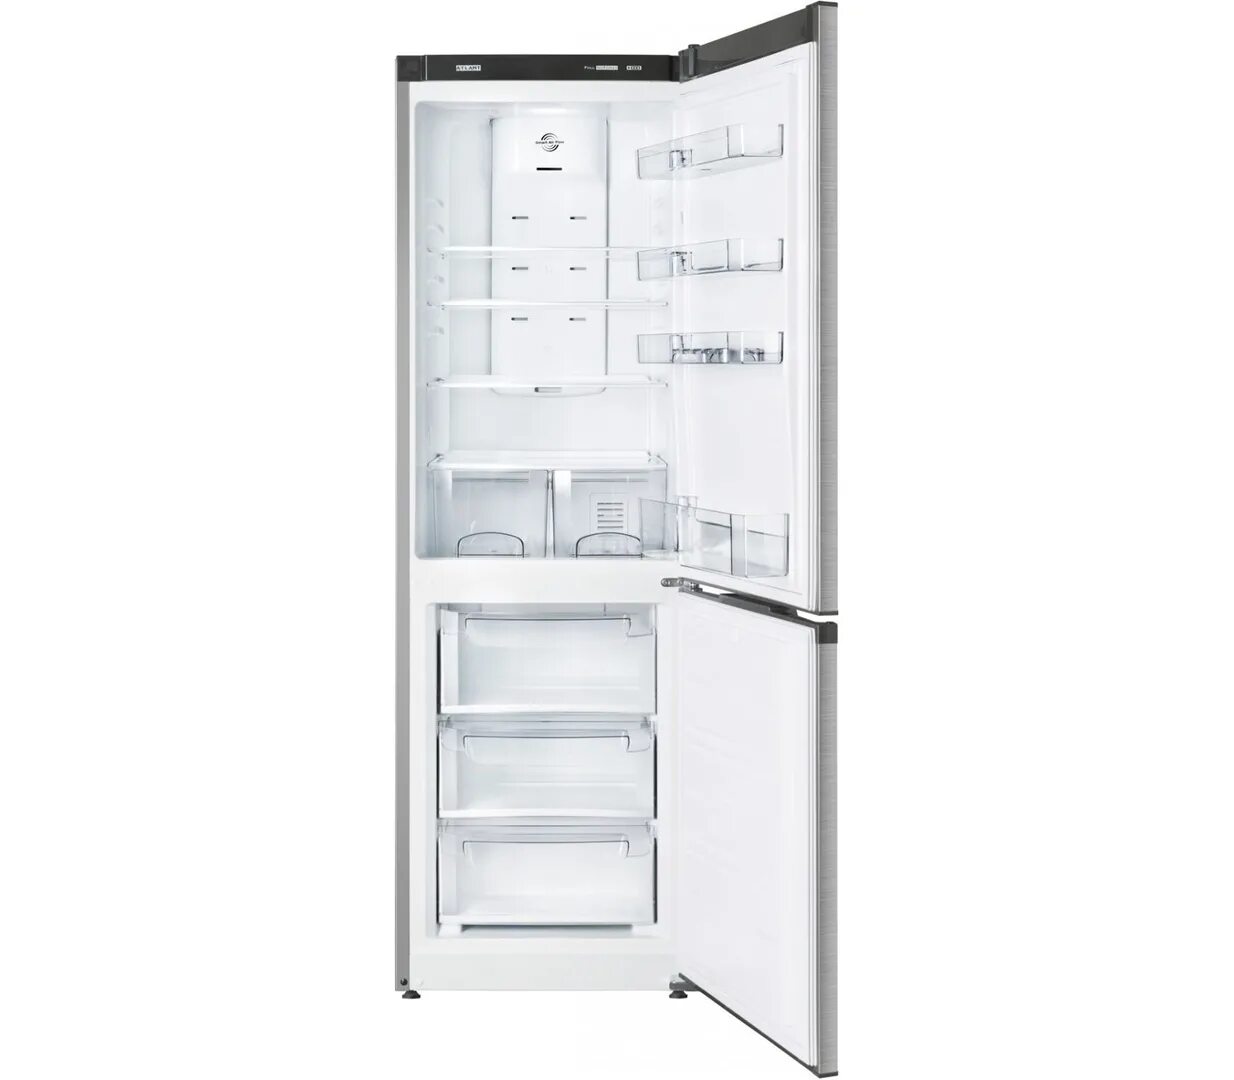 Атлант от производителя купить. Холодильник Атлант 4421-049-ND. Холодильник Атлант 4425-049-ND. Холодильник Атлант хм 4421-049 ND. Двухкамерный холодильник Атлант XM 4425-049 ND.